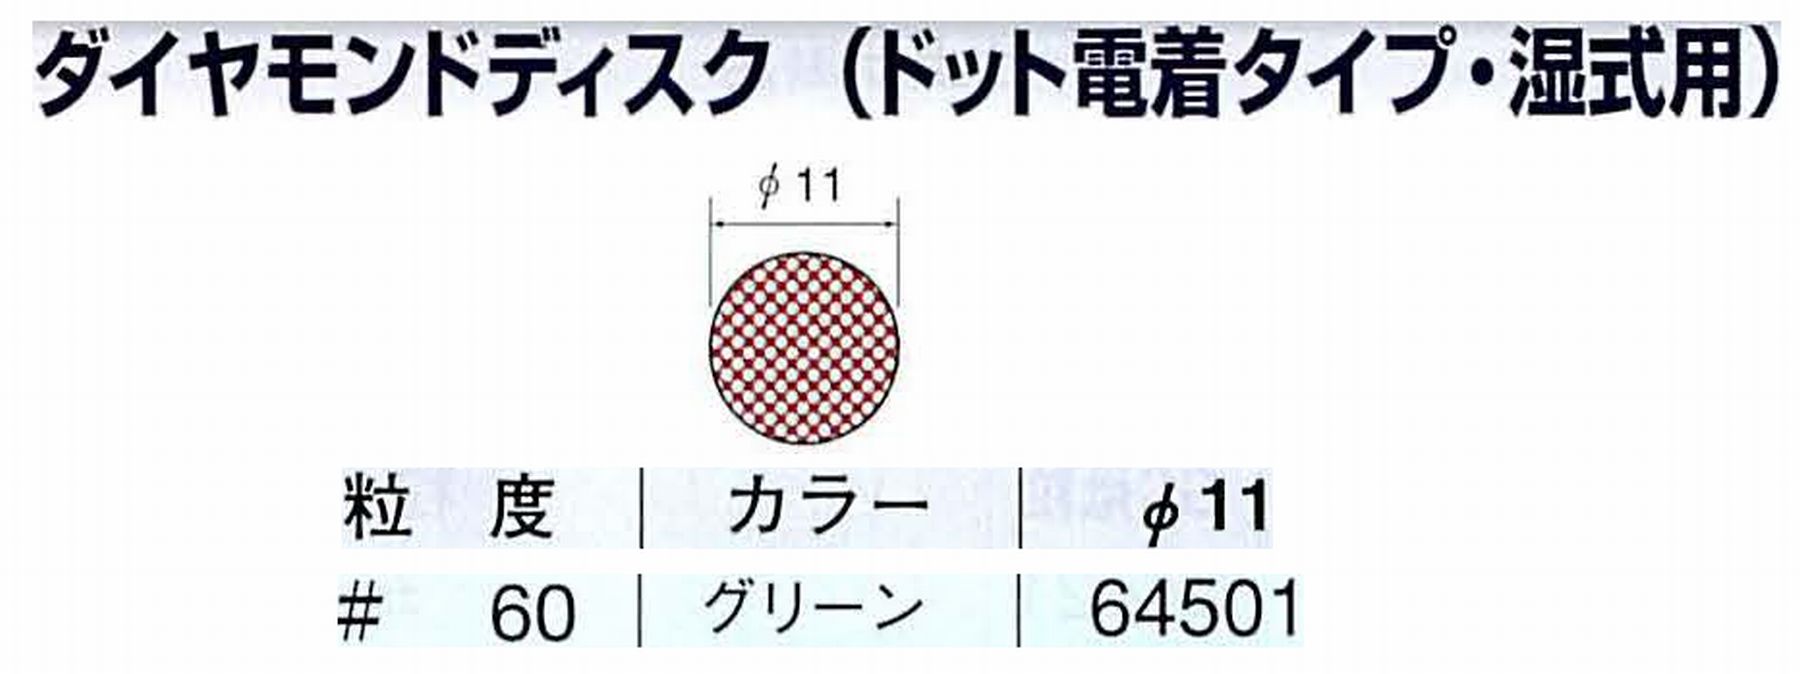 ナカニシ/NAKANISHI アングルグラインダ(電動・エアー) アングルアタッチメント専用工具 ダイヤモンドディスク(ドット電着タイプ・湿式用) 64501